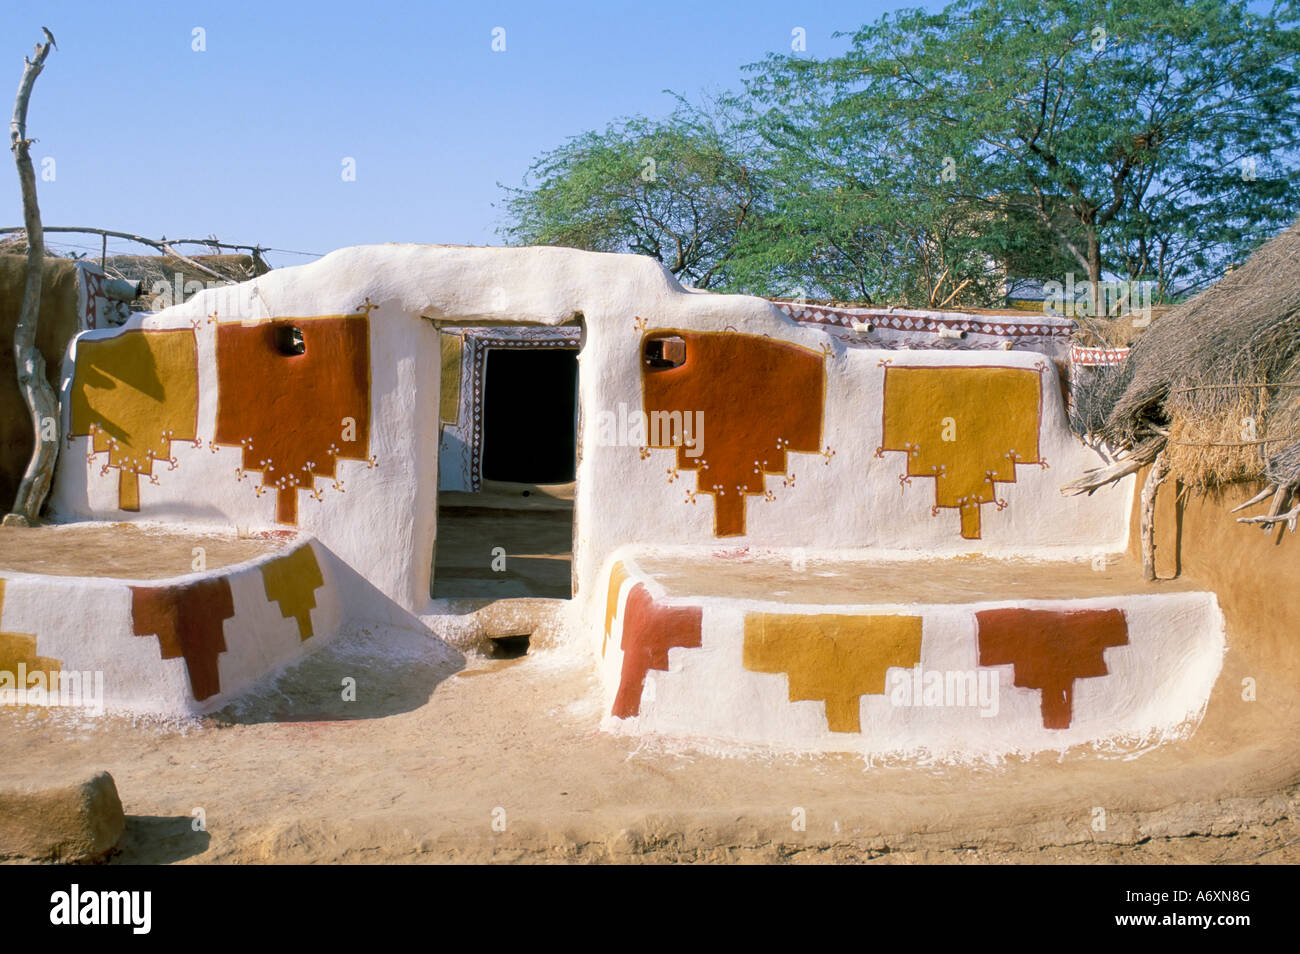 Des dessins géométriques sur les murs d'une maison de village près de Jaisalmer Rajasthan Inde Asie Banque D'Images